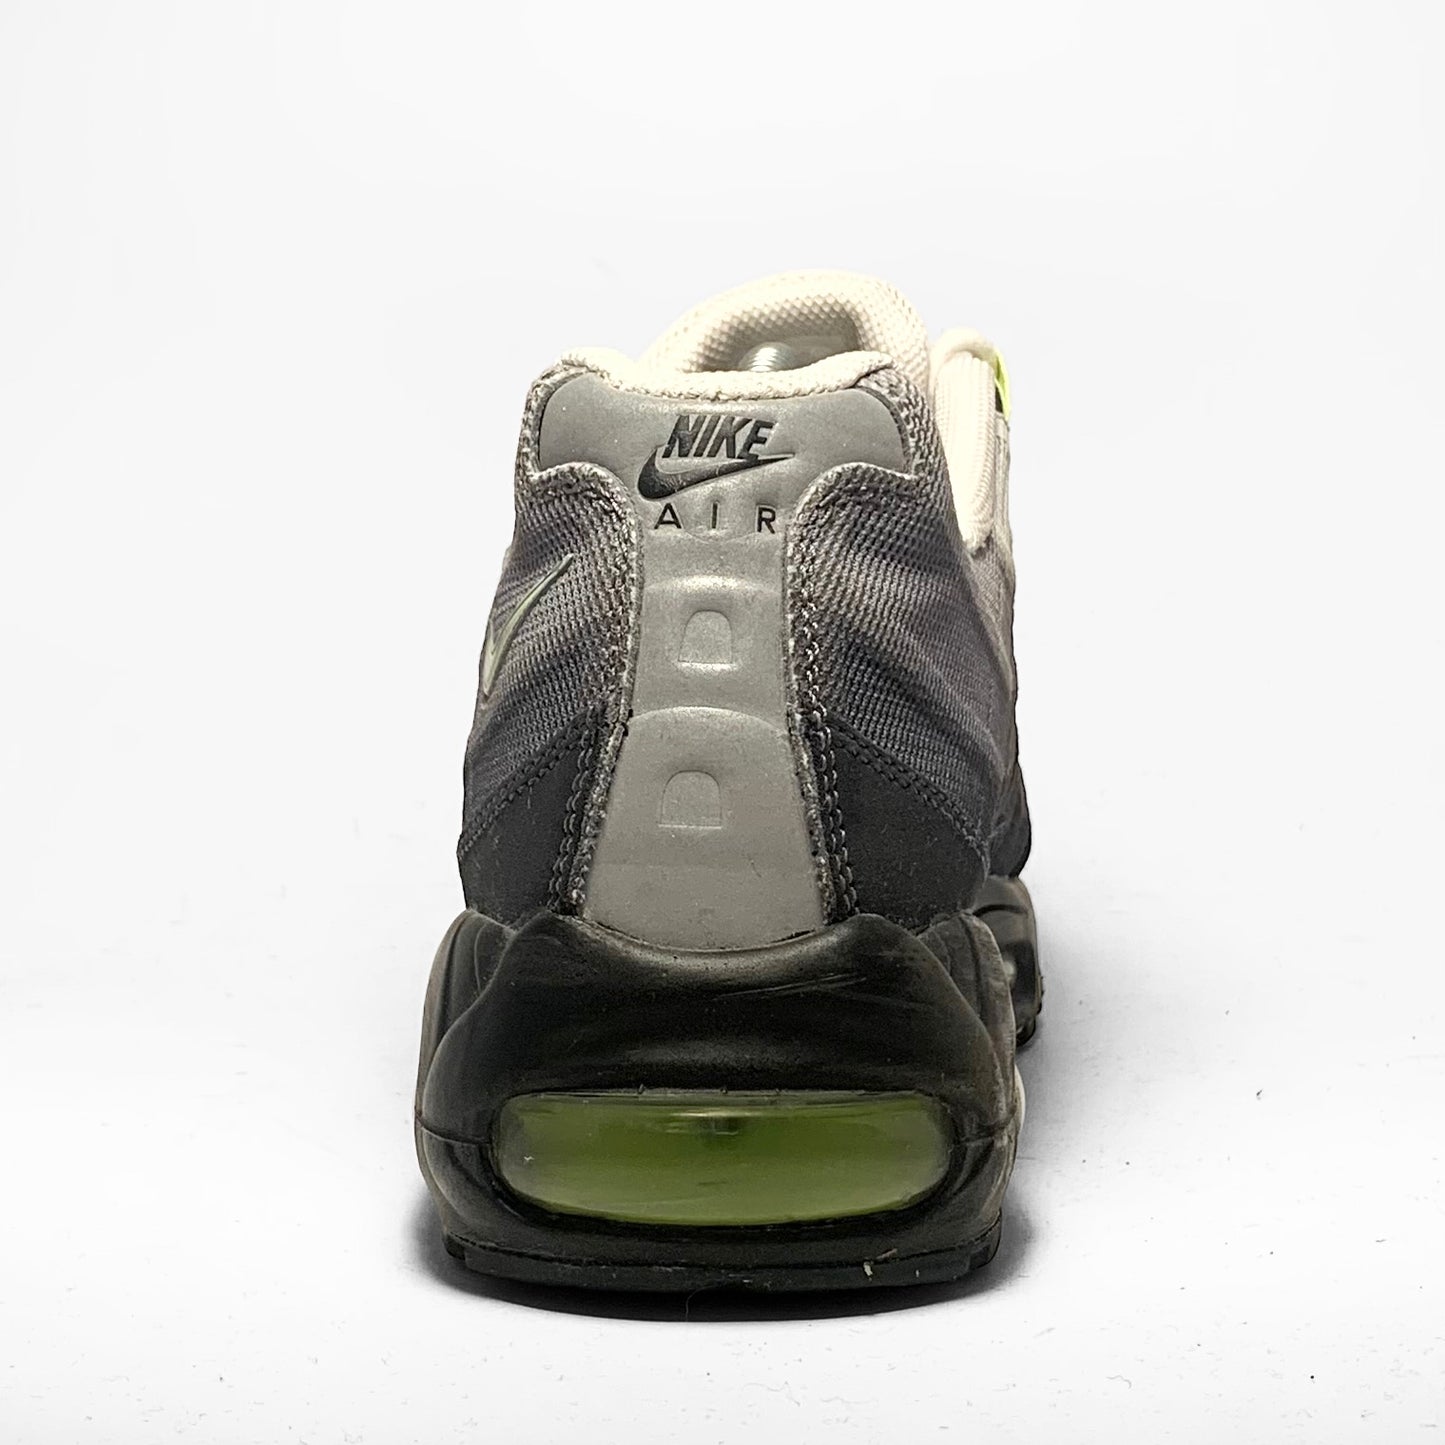 Nike Air Max 95 ‘Premium Tape - Neon’ (2013)